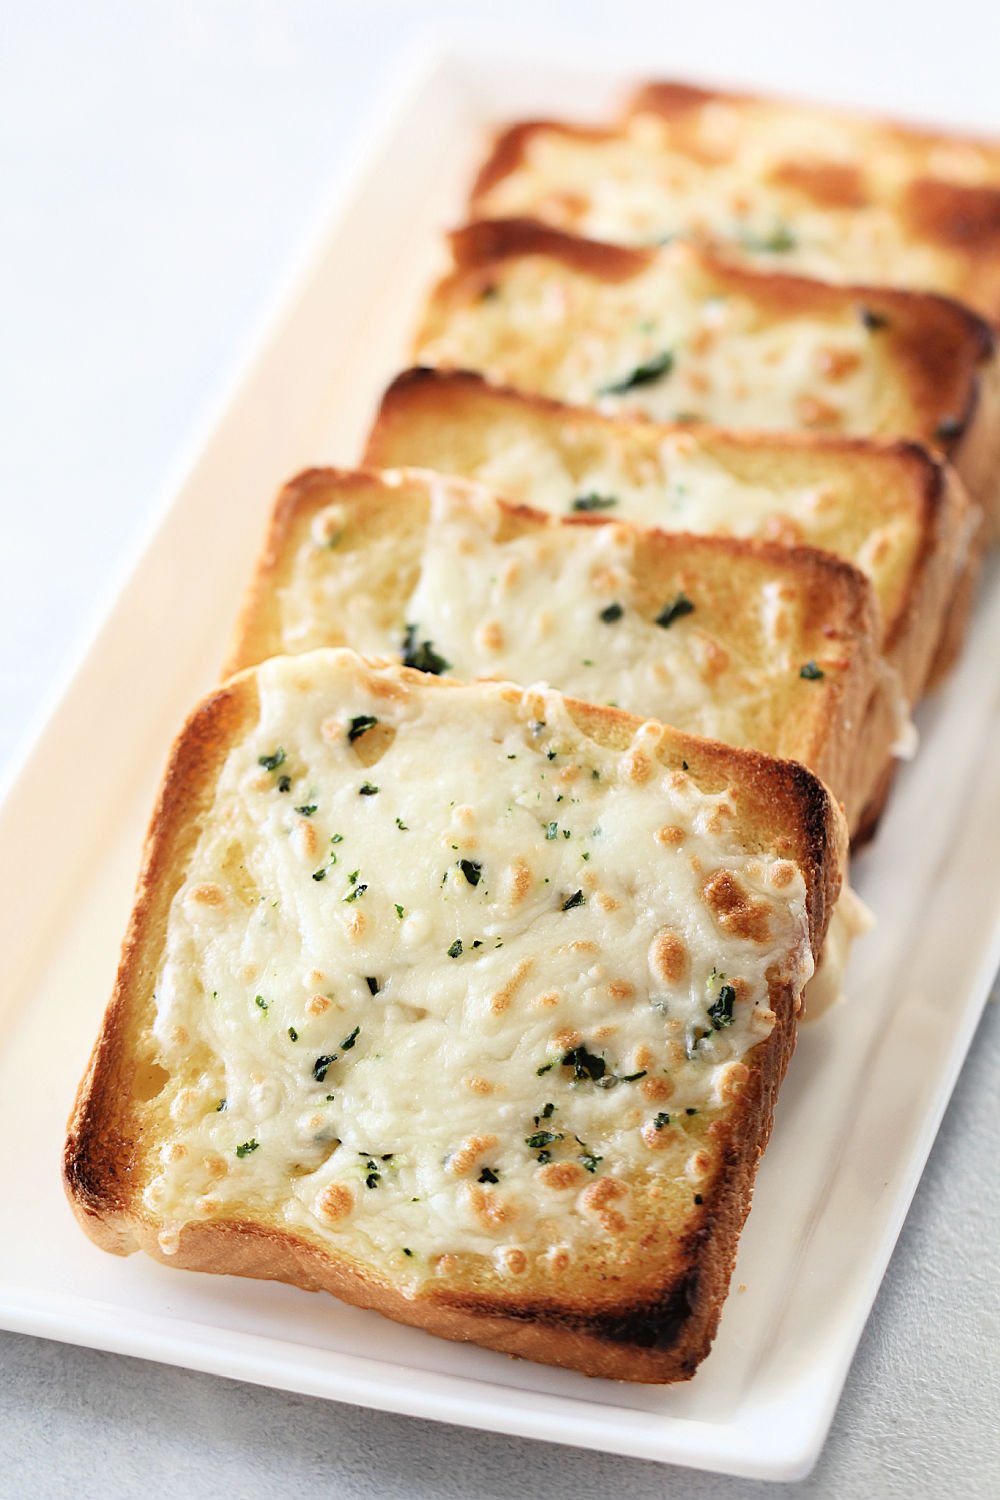 Cheesy Garlic Texas Toast